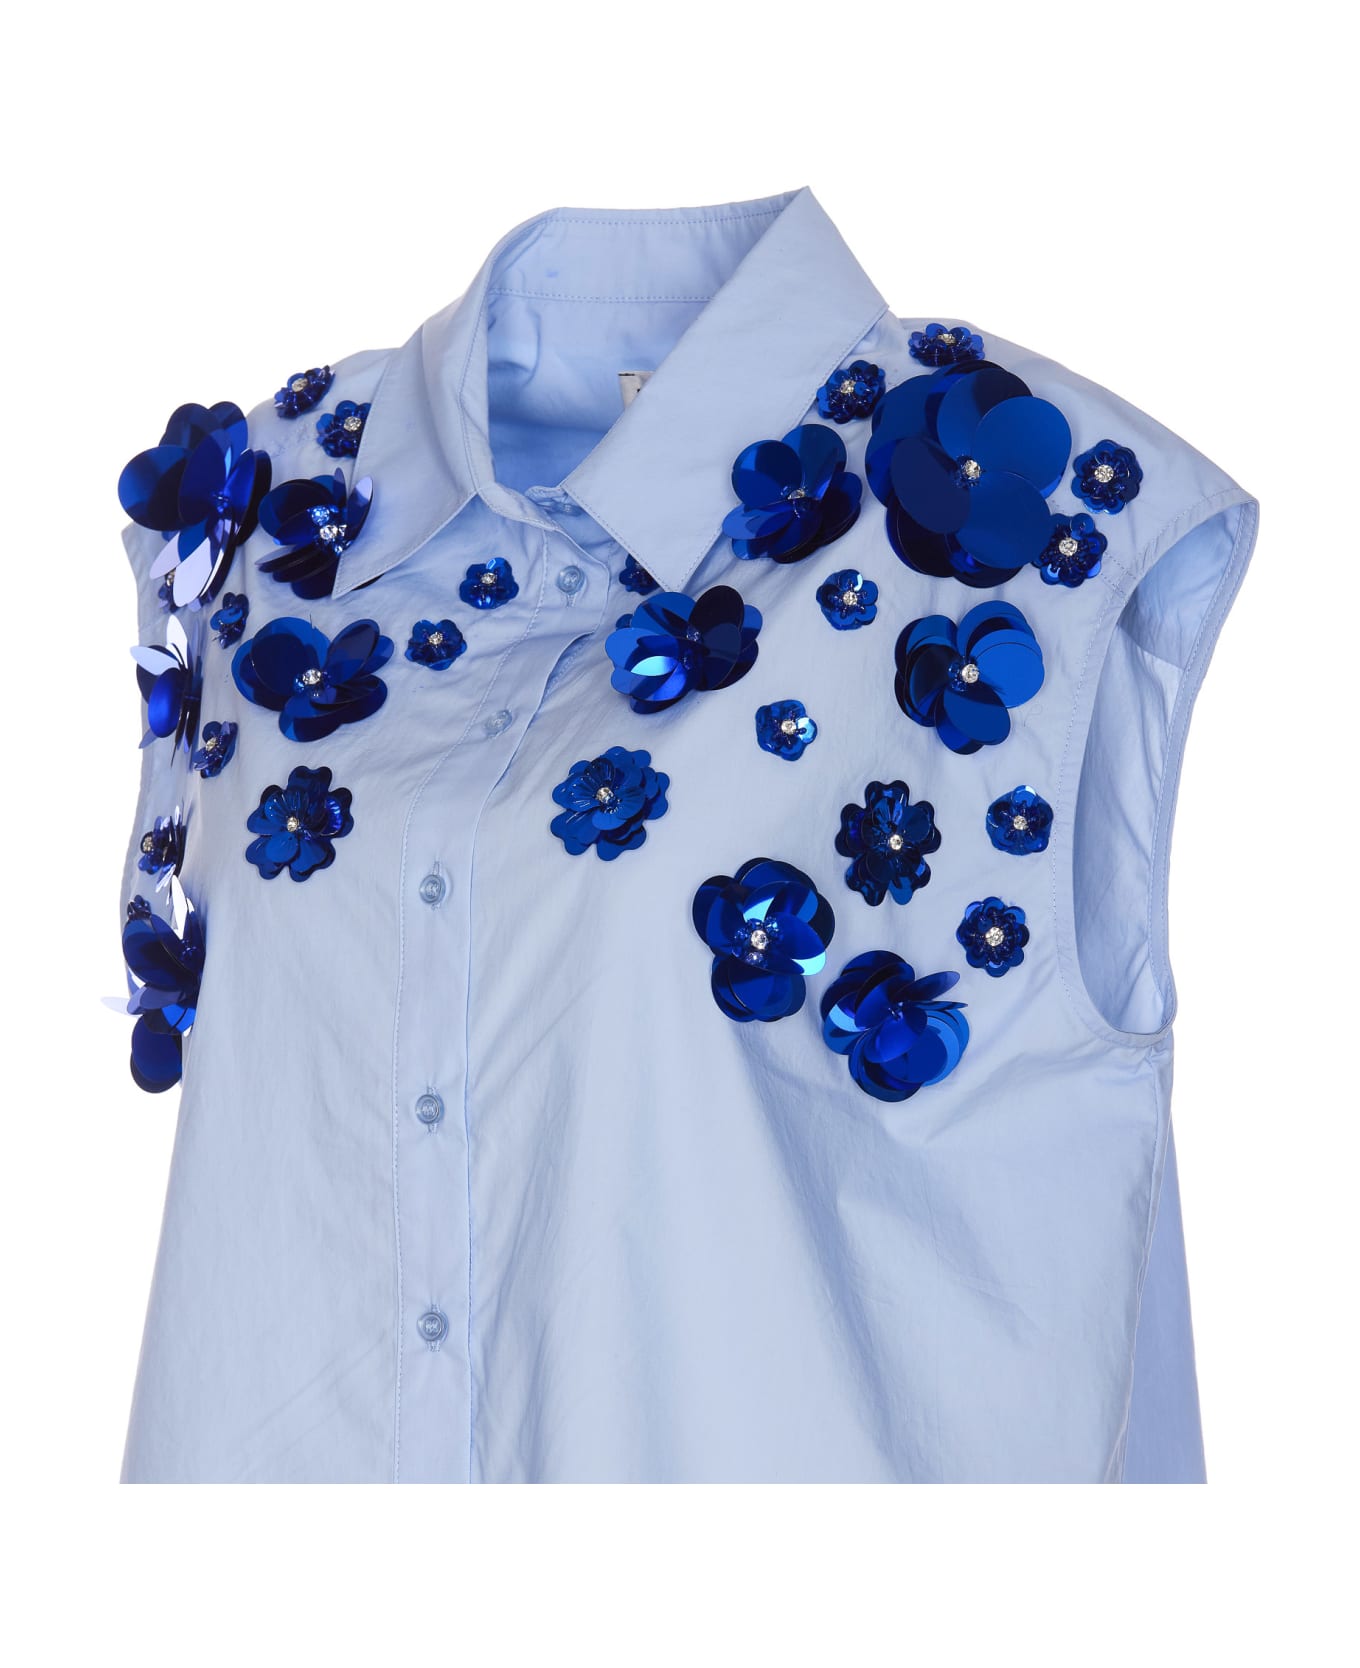 Essentiel Antwerp Fight Embroidered Shirt - Azzurro シャツ